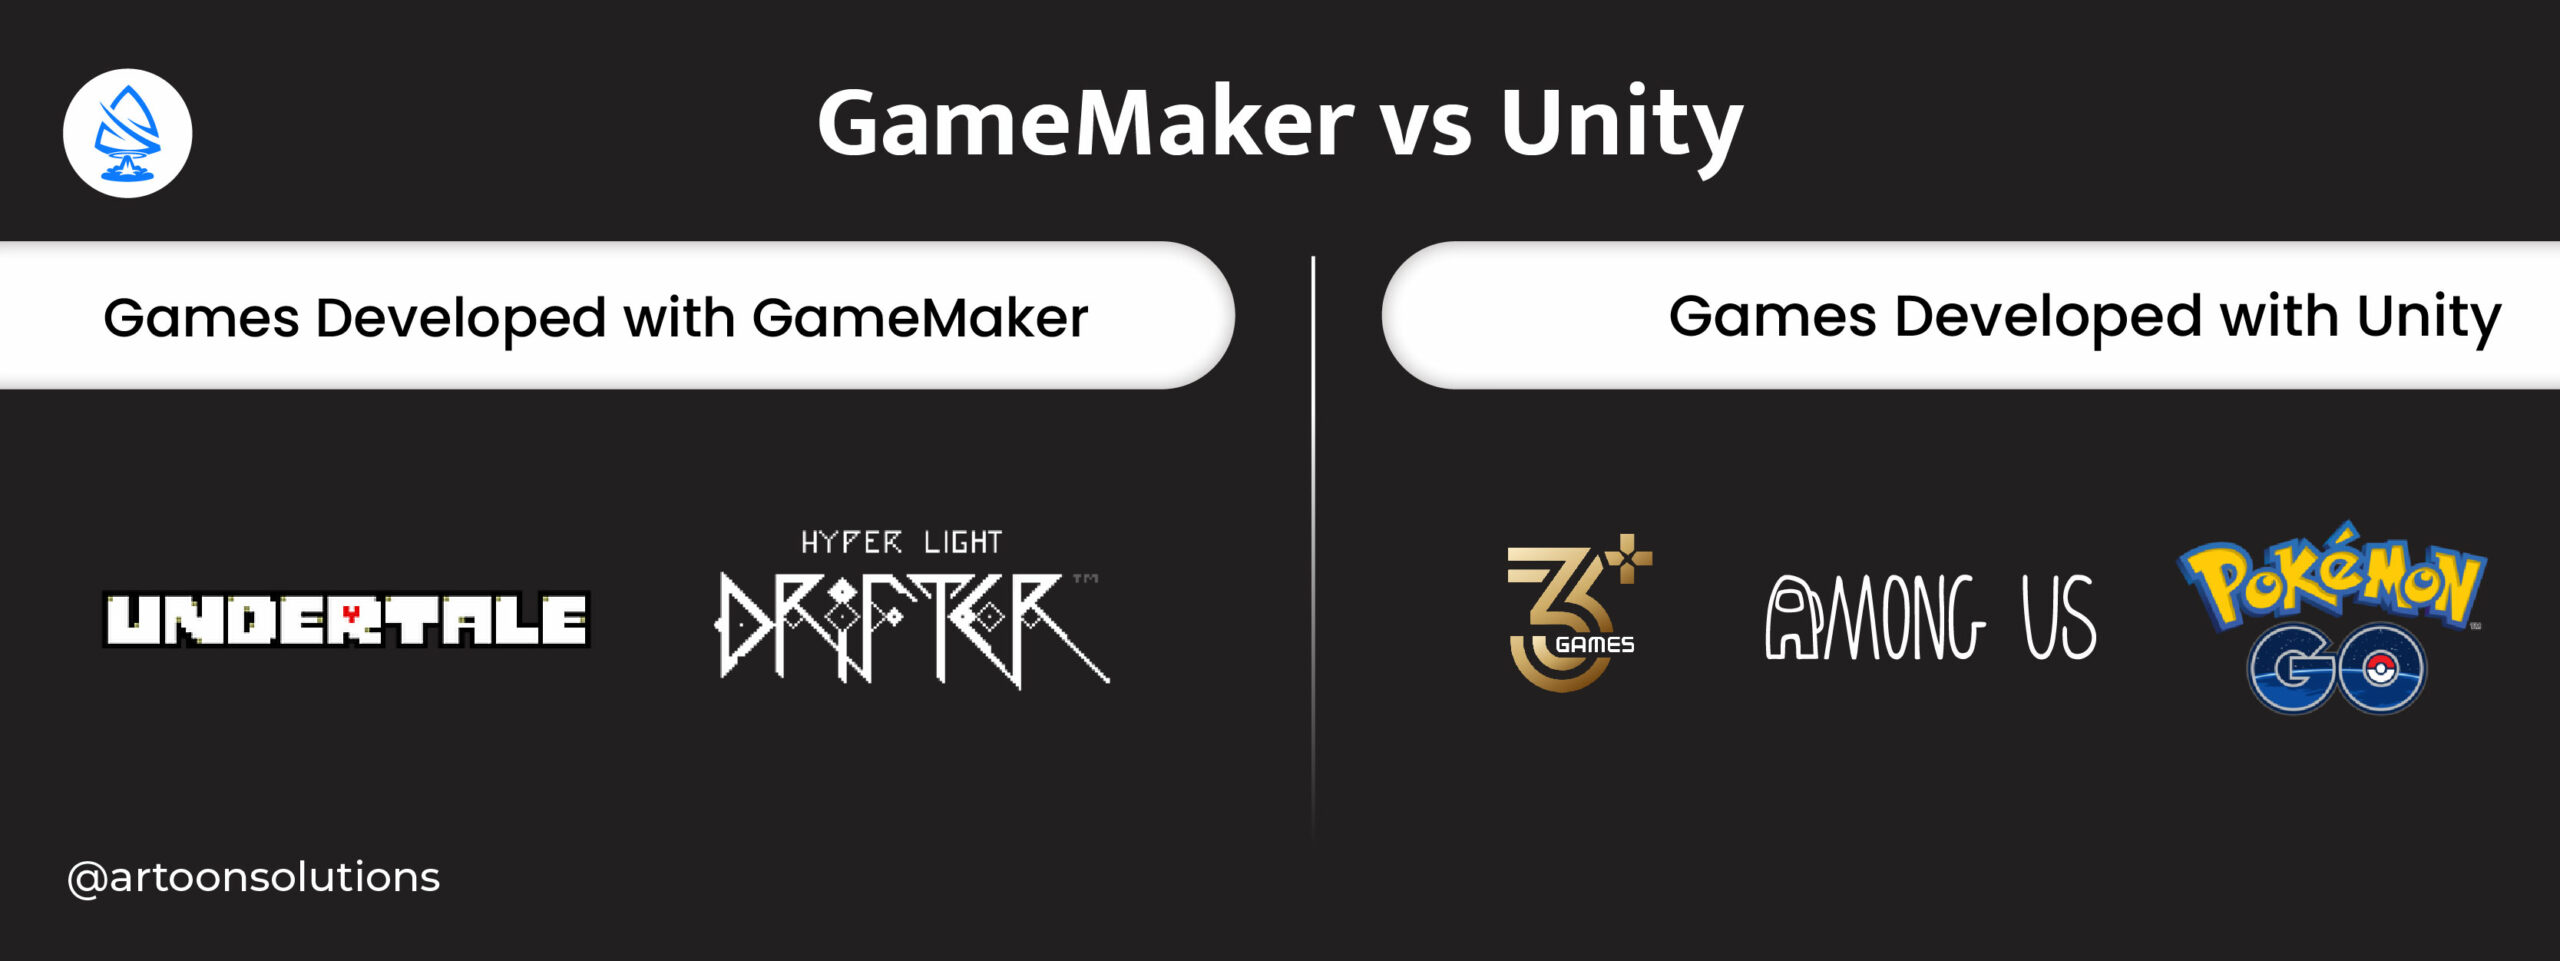 Overview of GameMaker vs Unity 